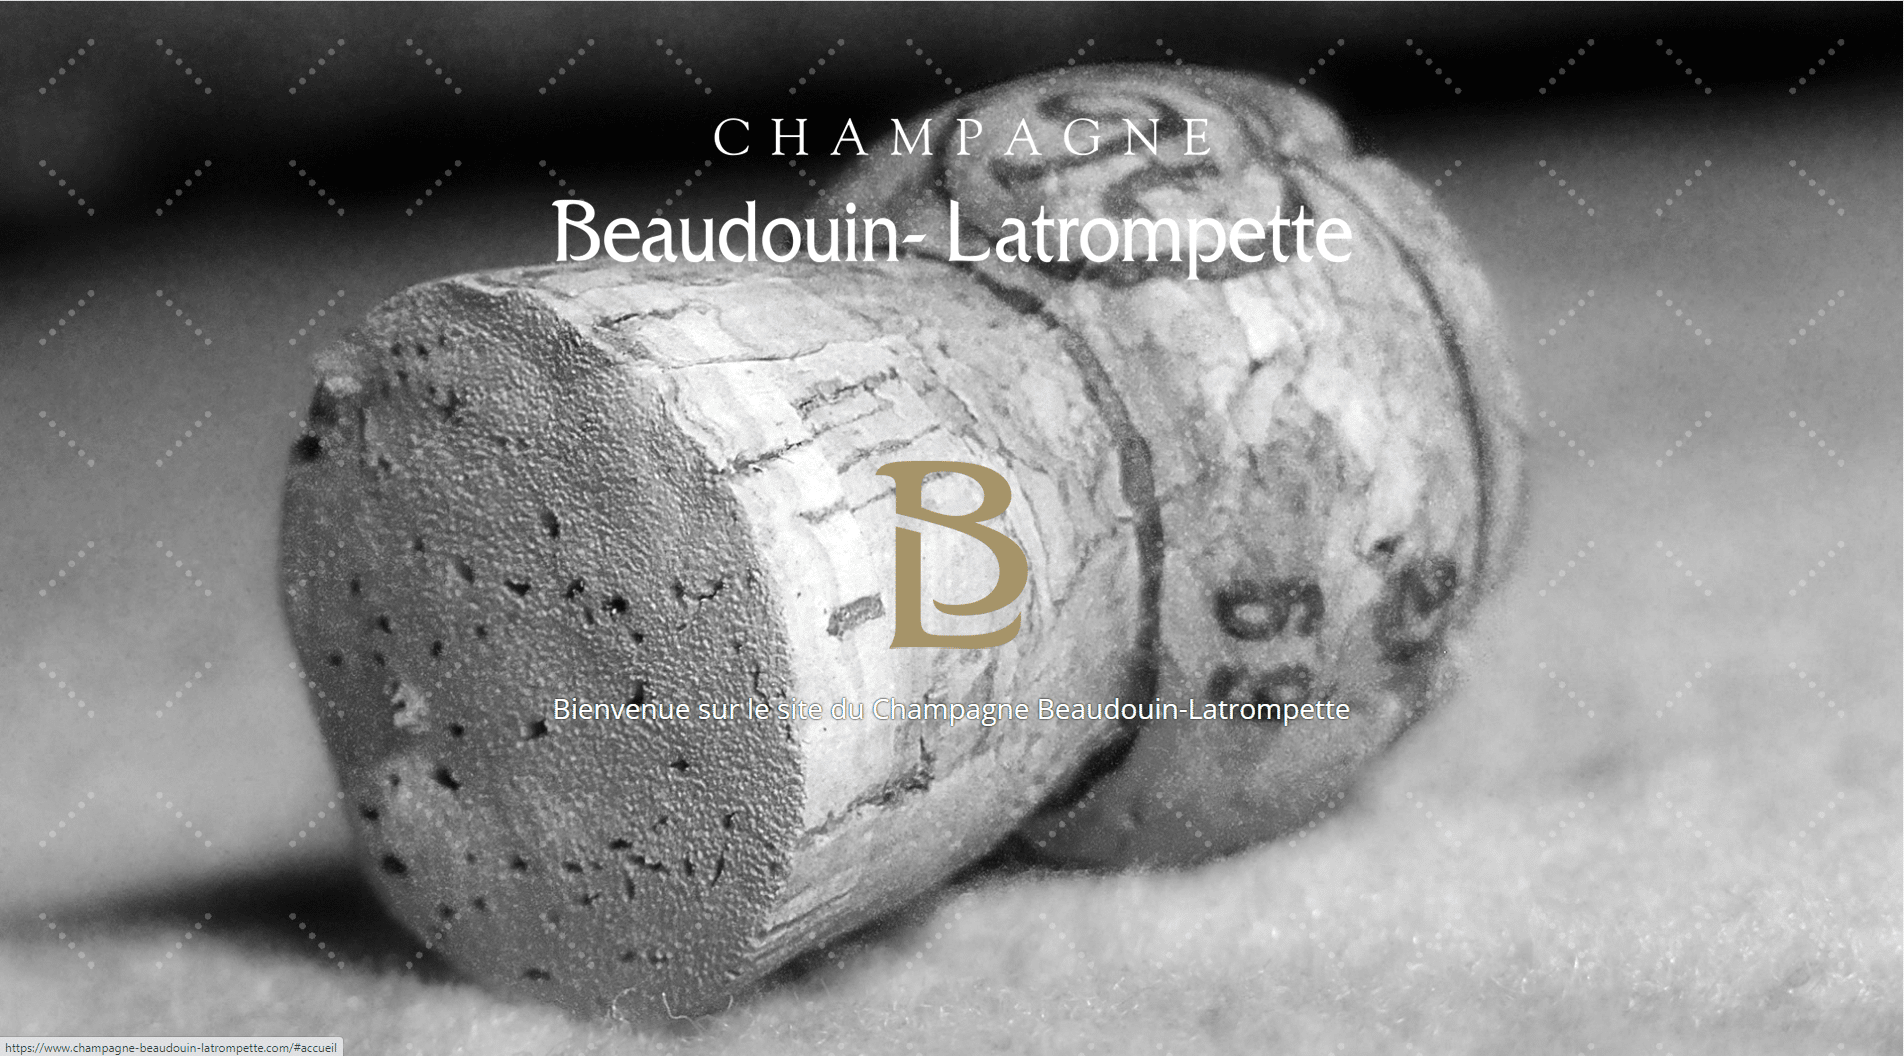 Champagne Beaudoin-Latrompette